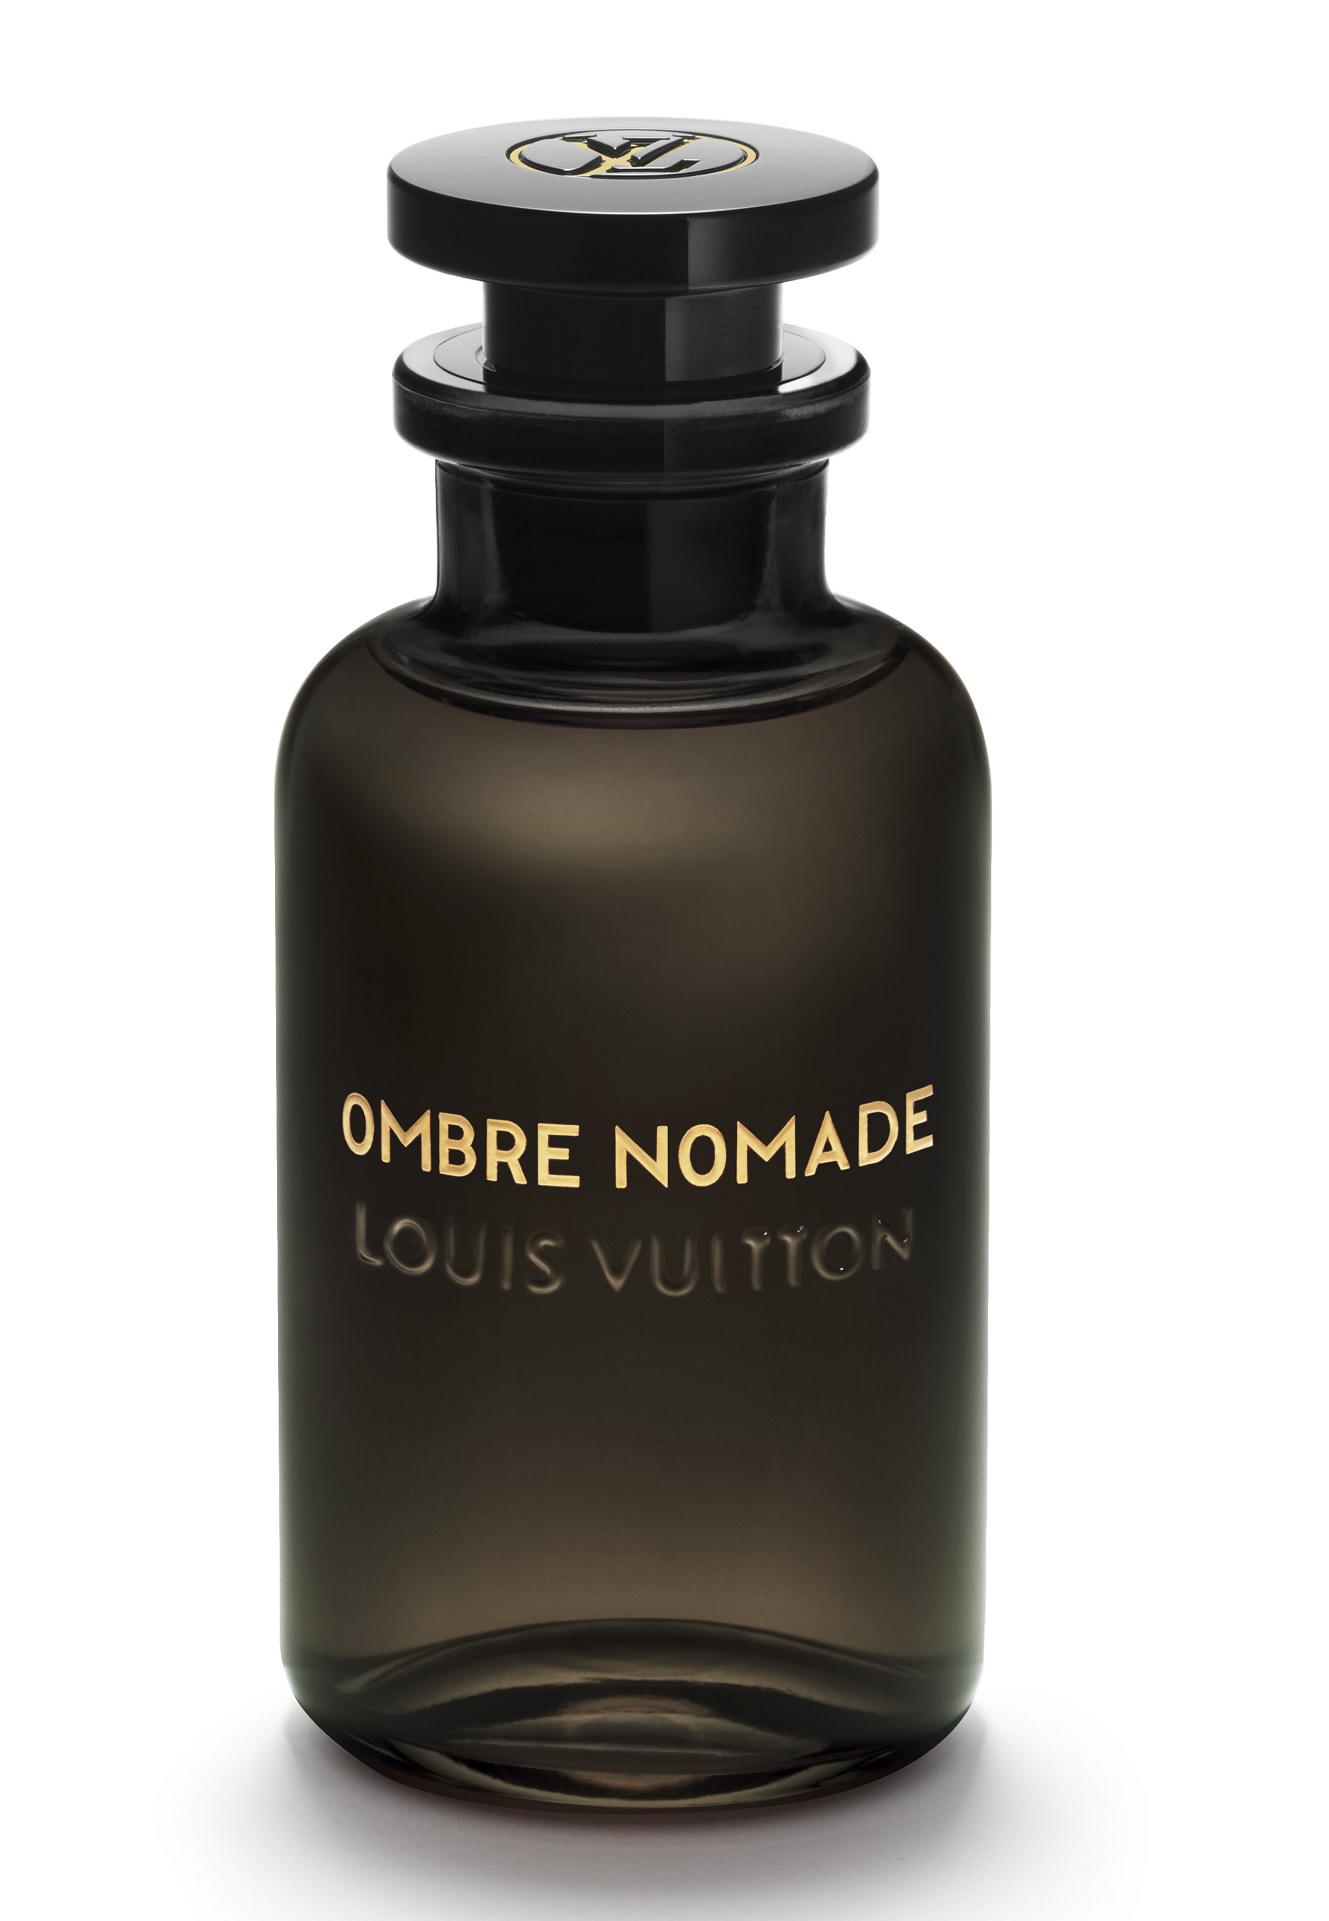 Ombre Nomade Louis Vuitton parfum - un nouveau parfum pour homme et femme 2018